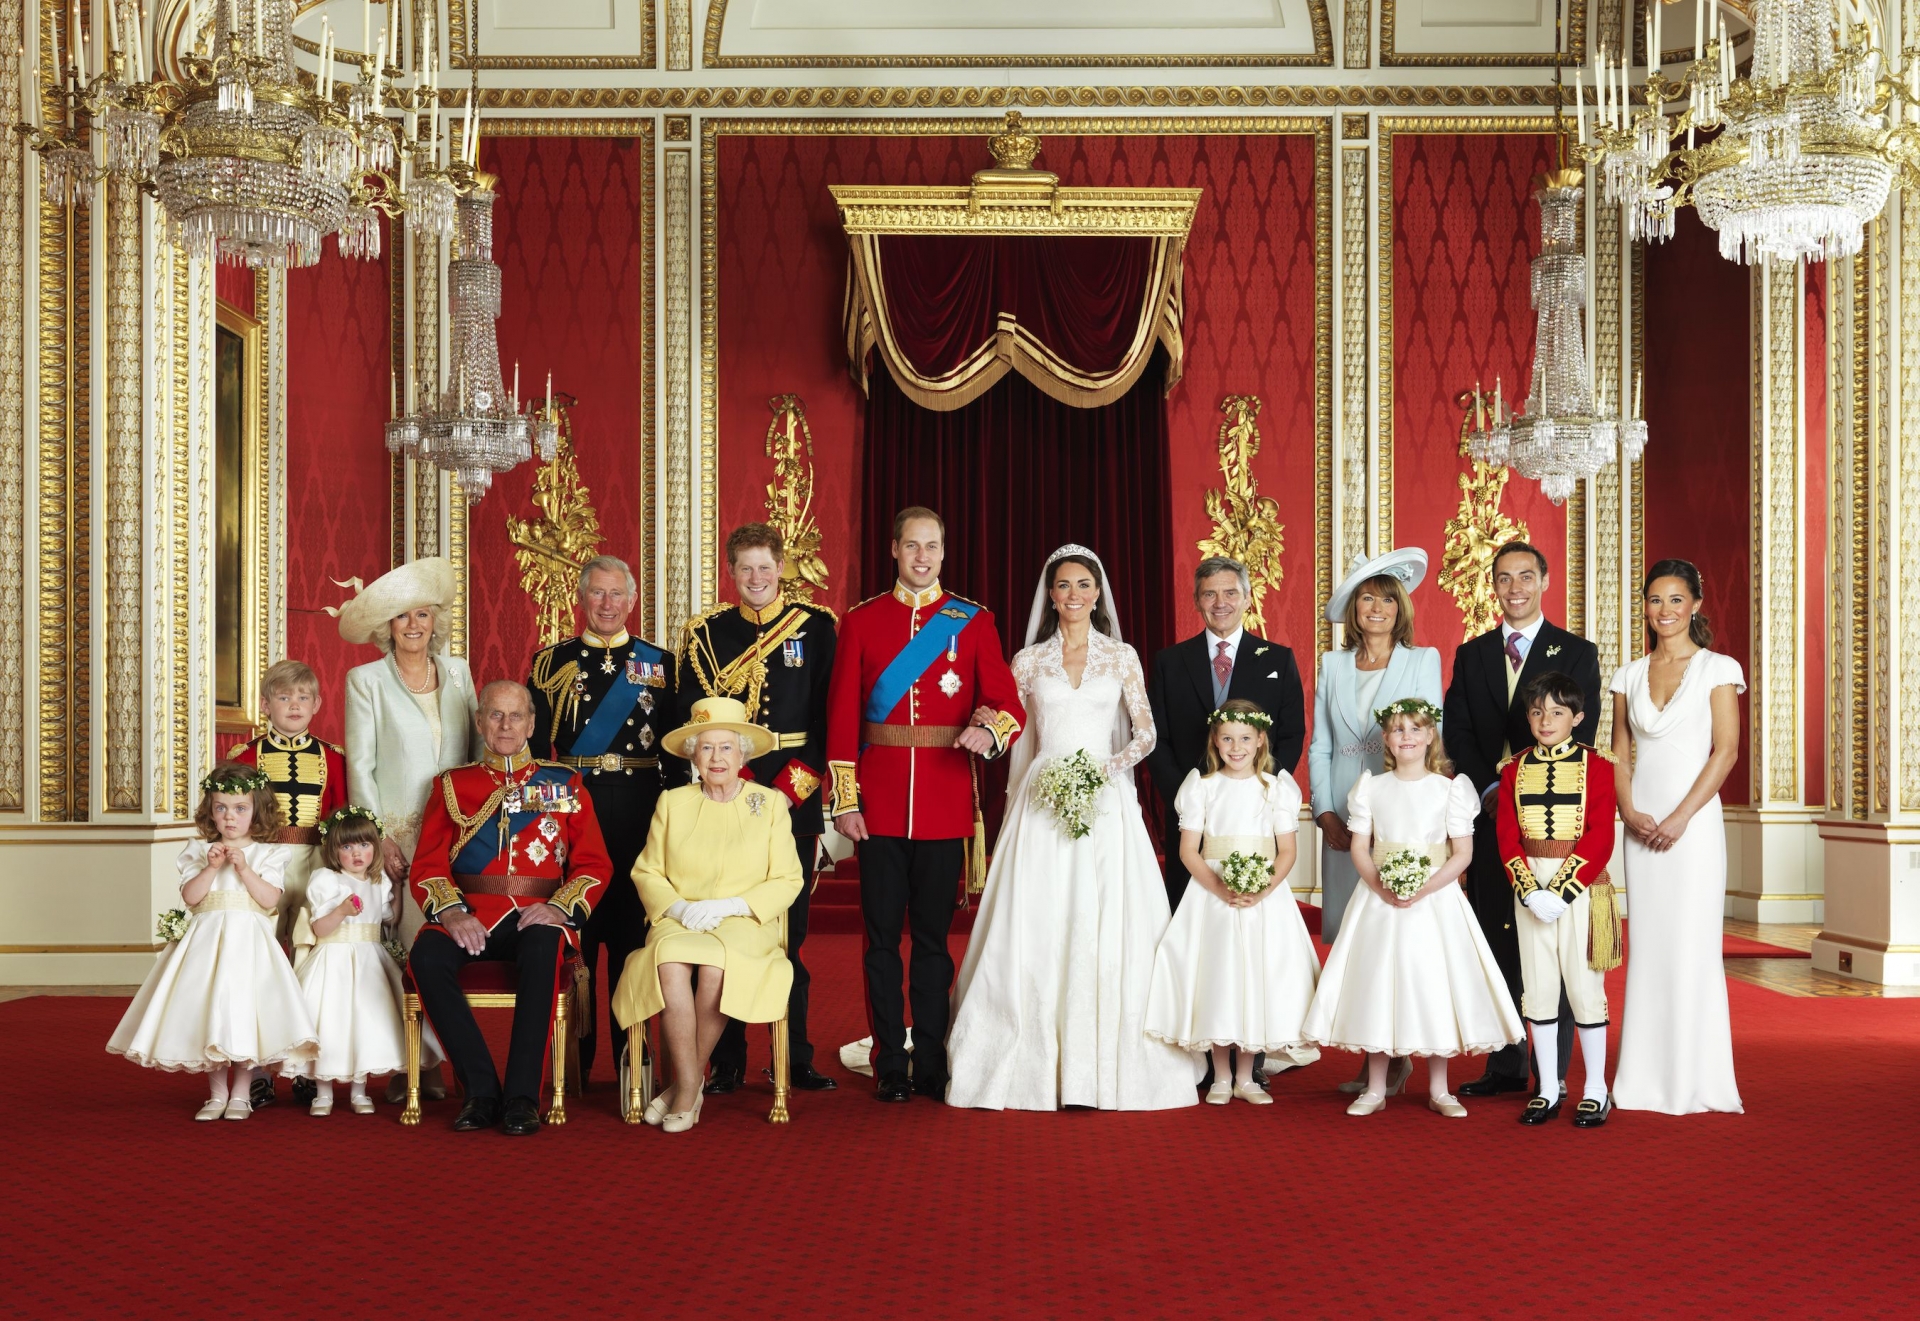 Kỷ niệm 10 năm đám cưới thế kỷ của Hoàng tử William và Công nương Kate: Những điều bạn có thể chưa biết! - Ảnh 5